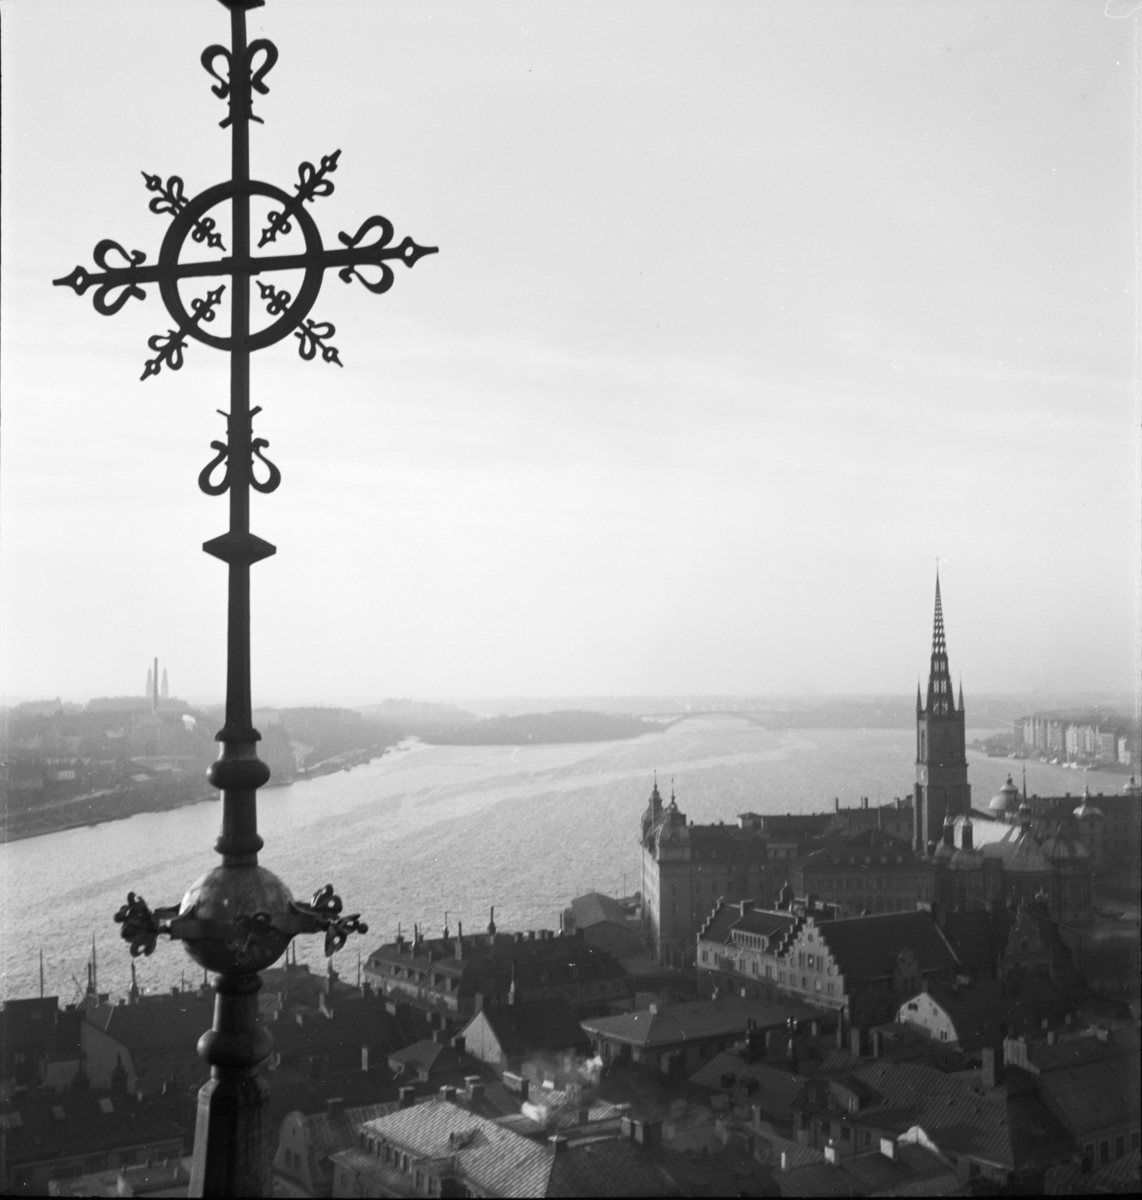 Utsikt mot Riddarholmskyrkan från Tyska kyrkans torn, Stockholm
Exteriör